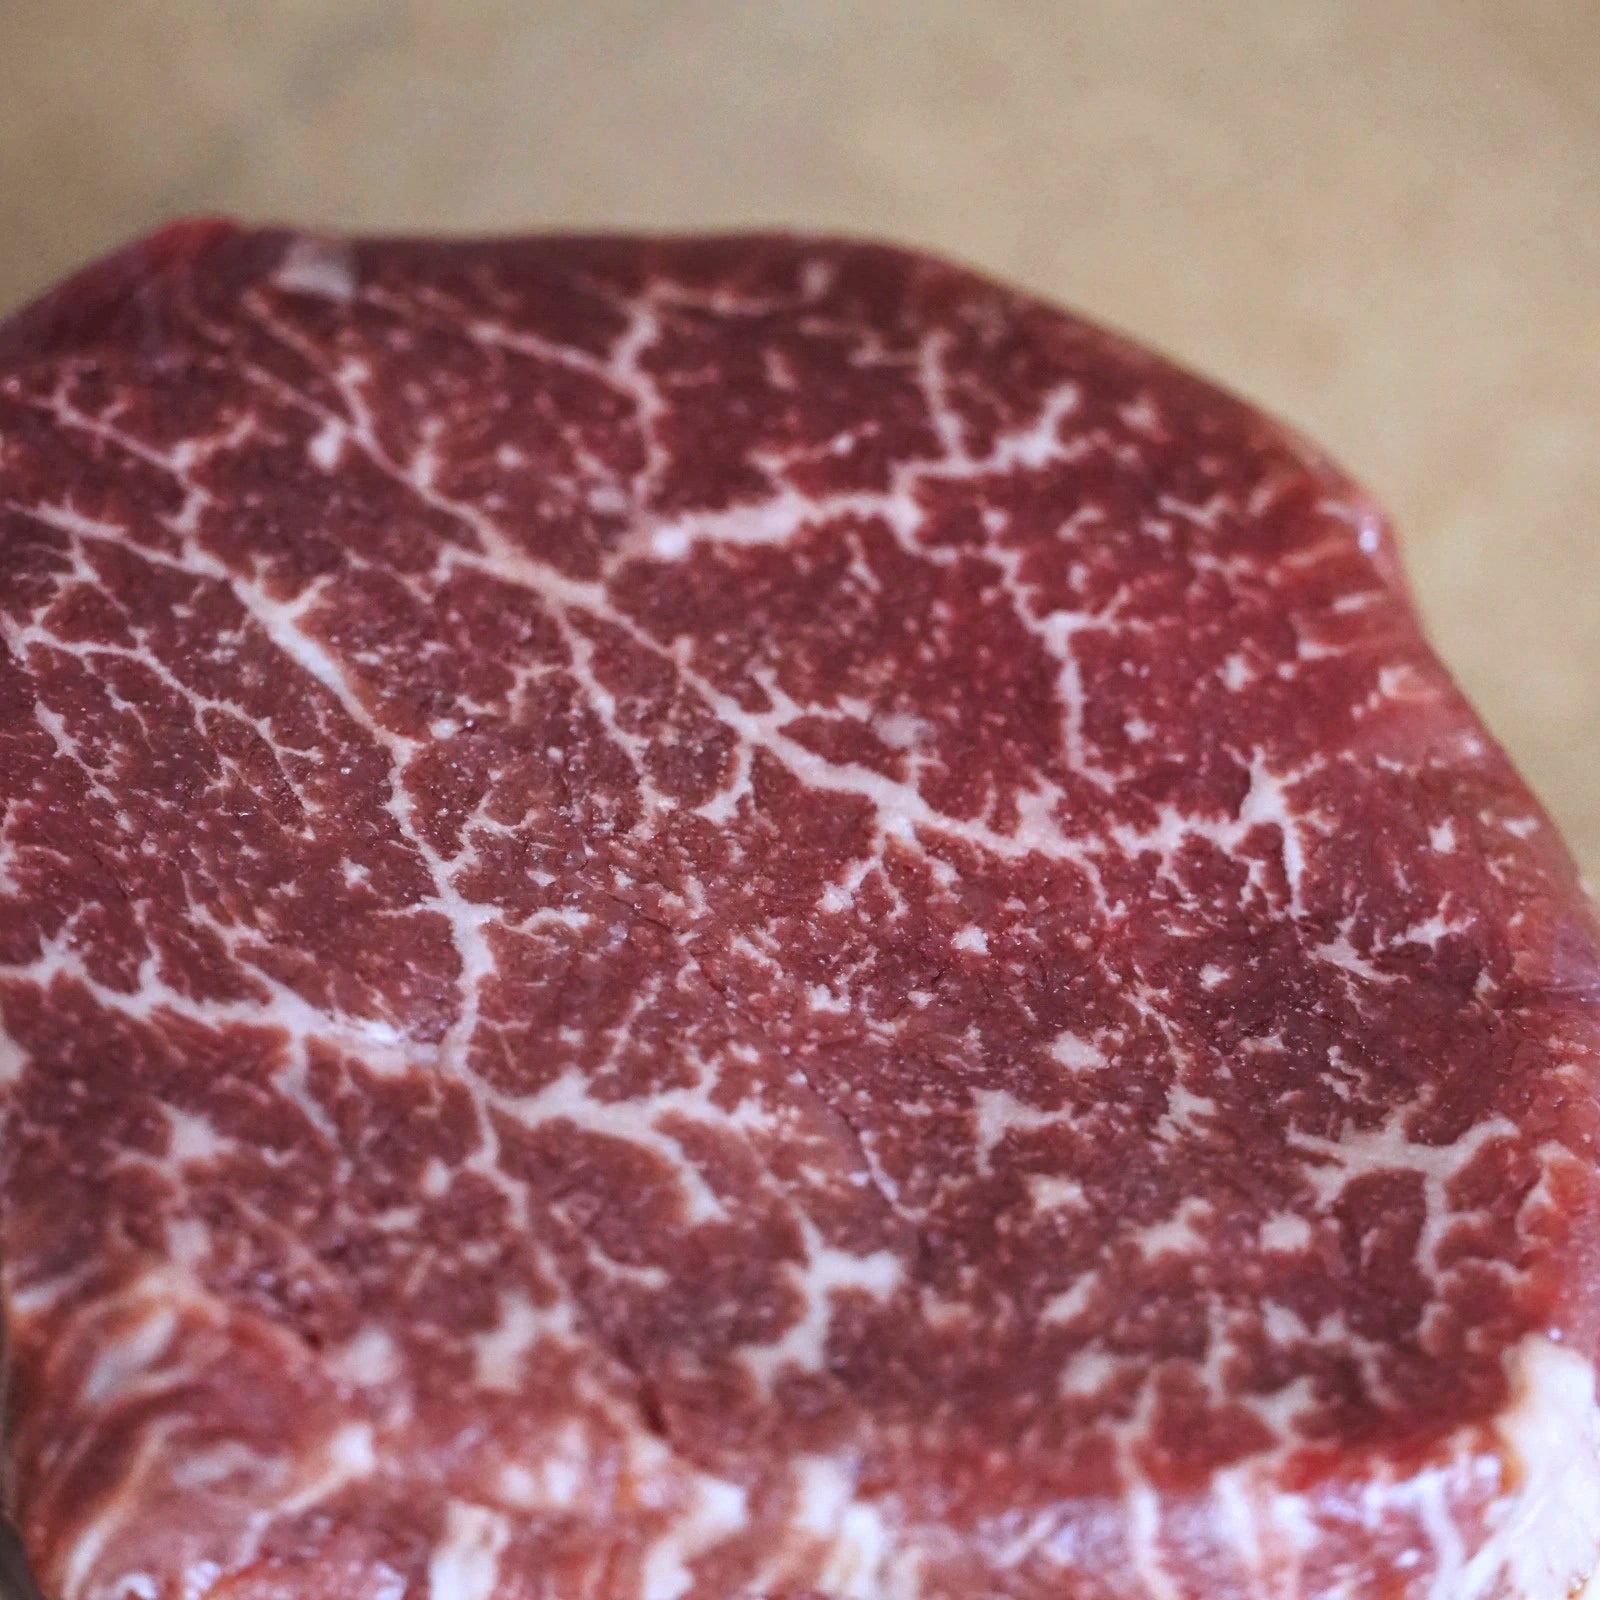 Morgan Ranch USDA Prime Filet Mignon Steak (150g) - Horizon Farms